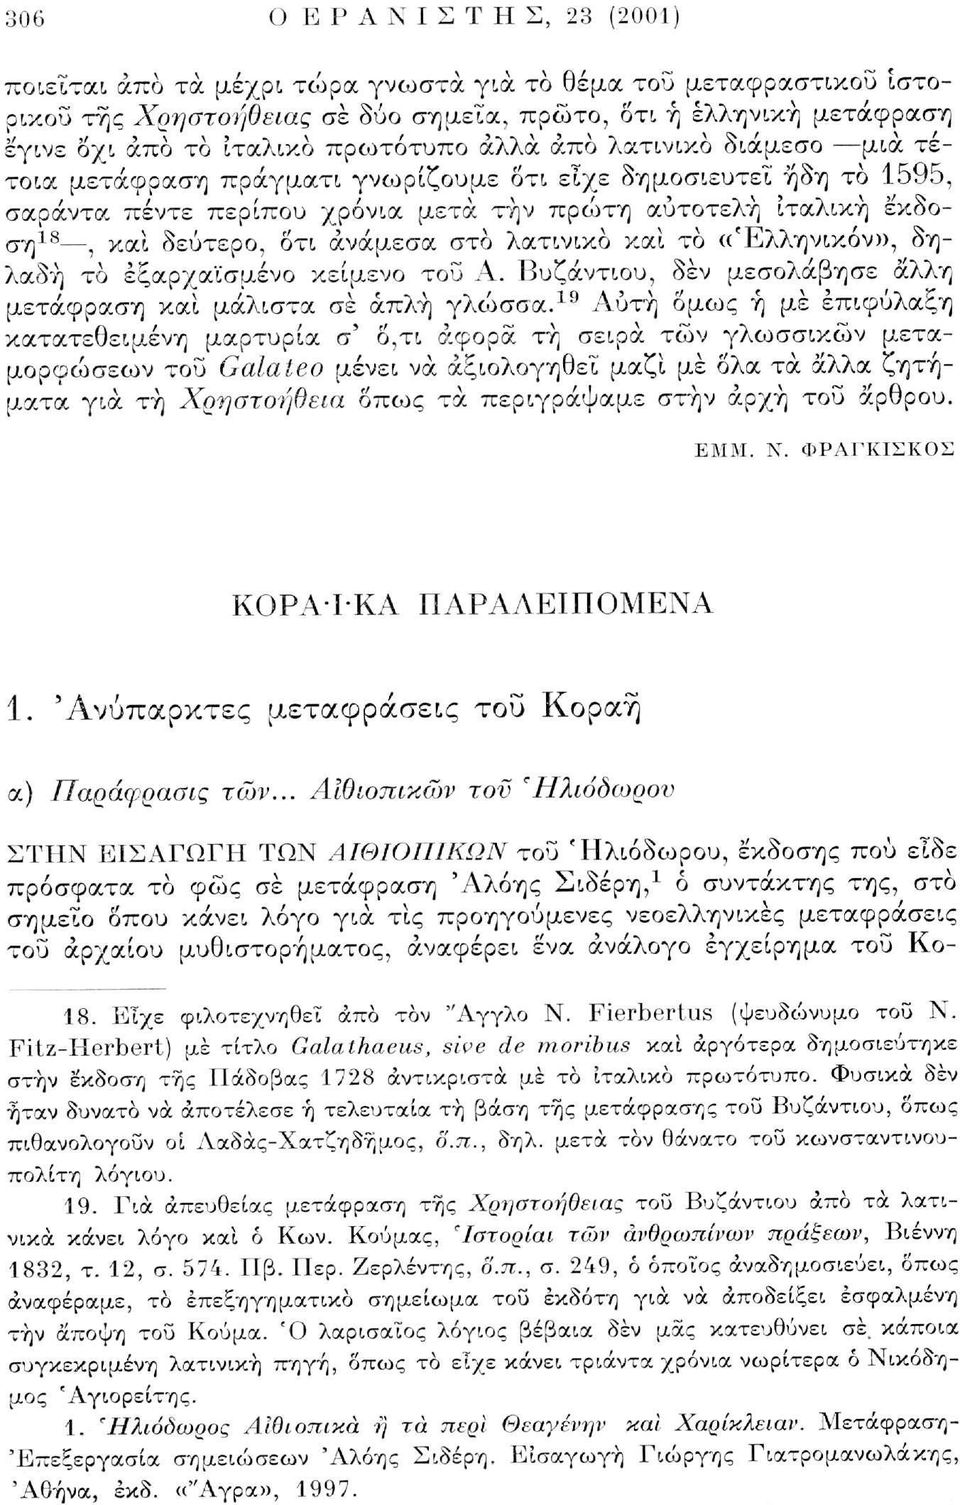 ανάμεσα στο λατινικό και το «Έλληνικόν», δηλαδή το έξαρχαϊσμένο κείμενο του Α. Βυζάντιου, δεν μεσολάβησε άλλη μετάφραση καί μάλιστα σε απλή γλώσσα.